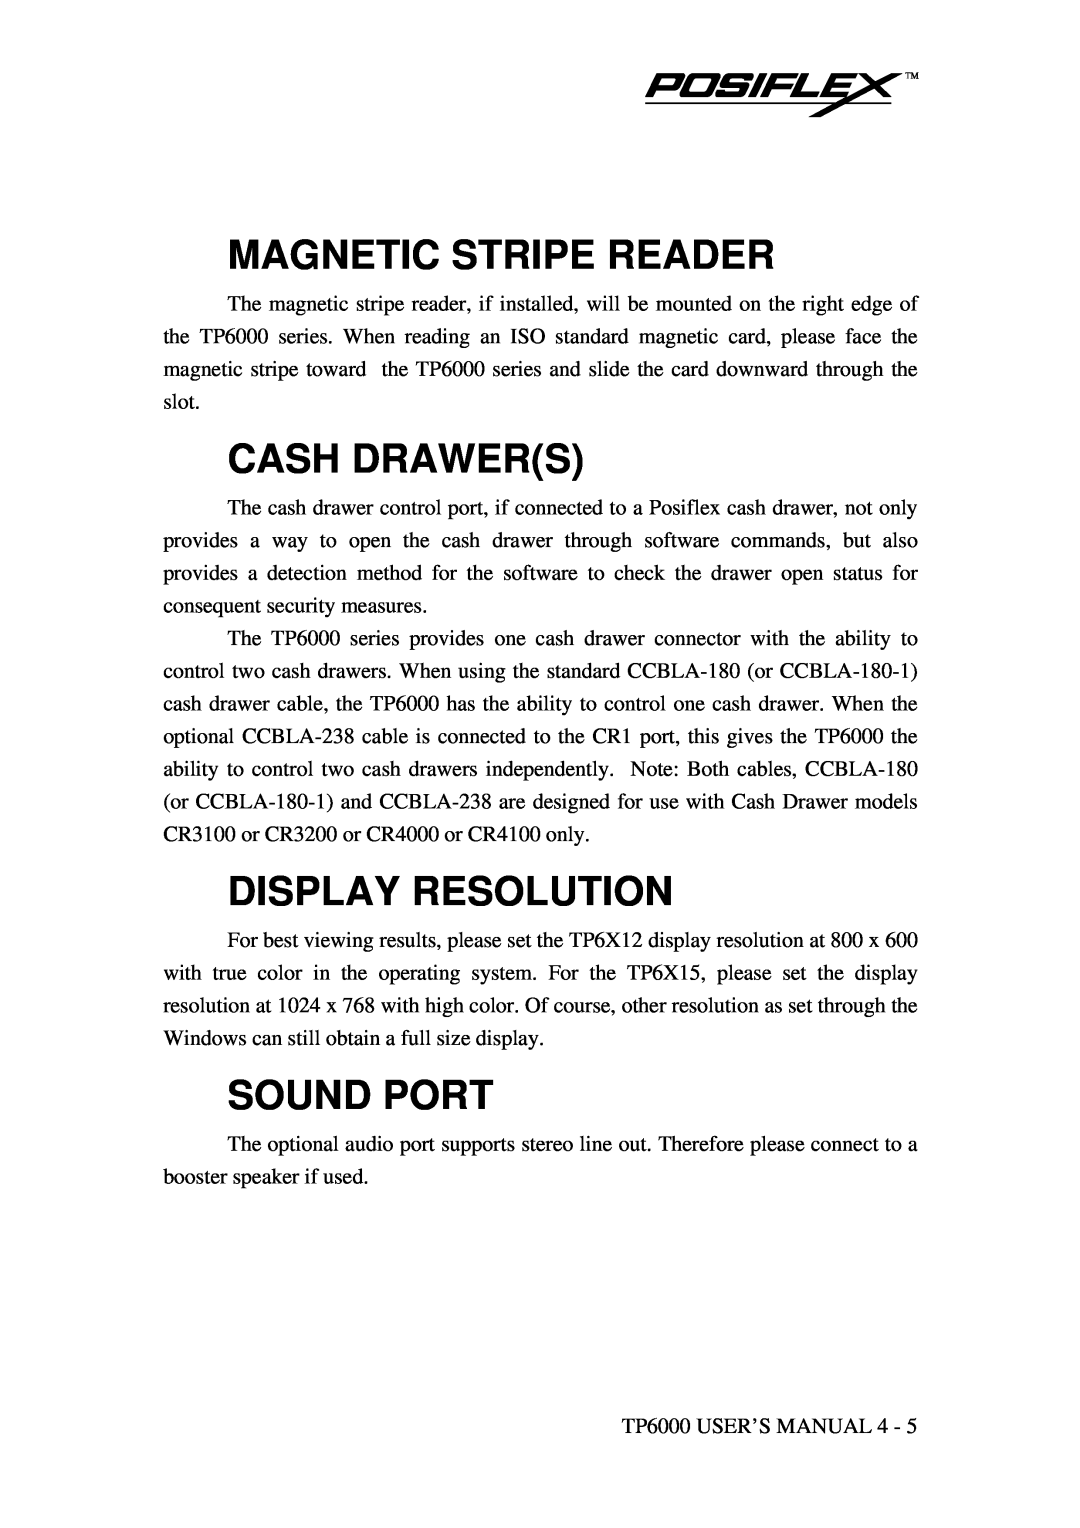 Mustek TP-6000 user manual Magnetic Stripe Reader, Cash Drawers, Display Resolution, Sound Port 